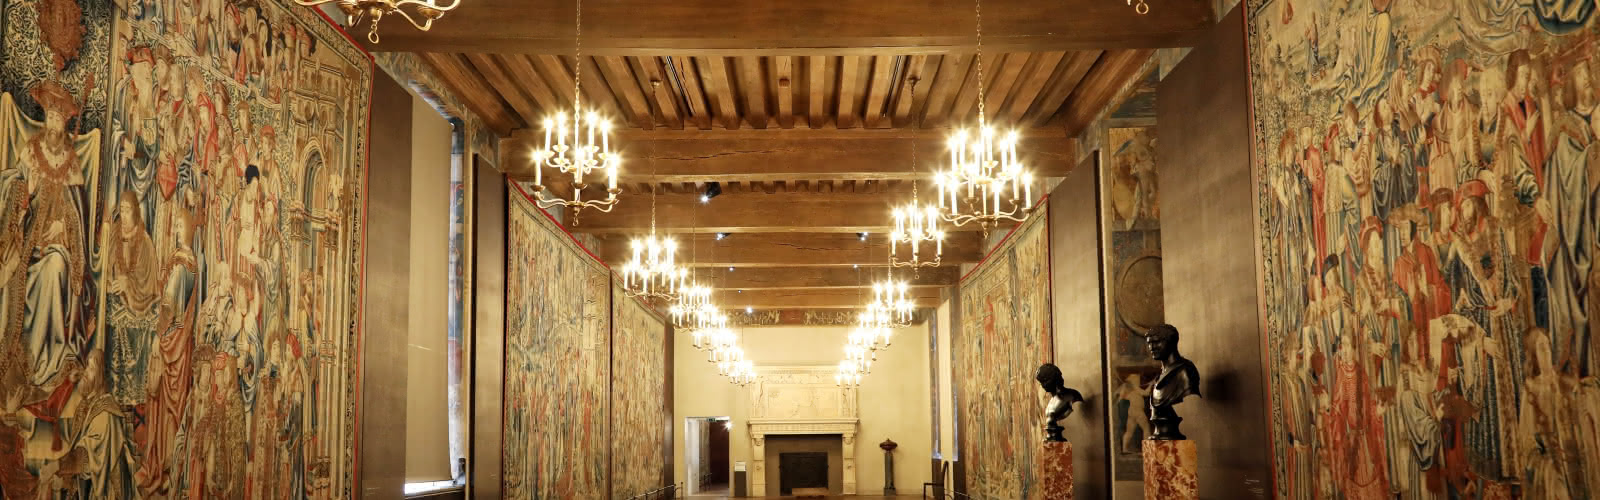 Galerie de Psychée -  Château d'Écouen Musée national de la Renaissance